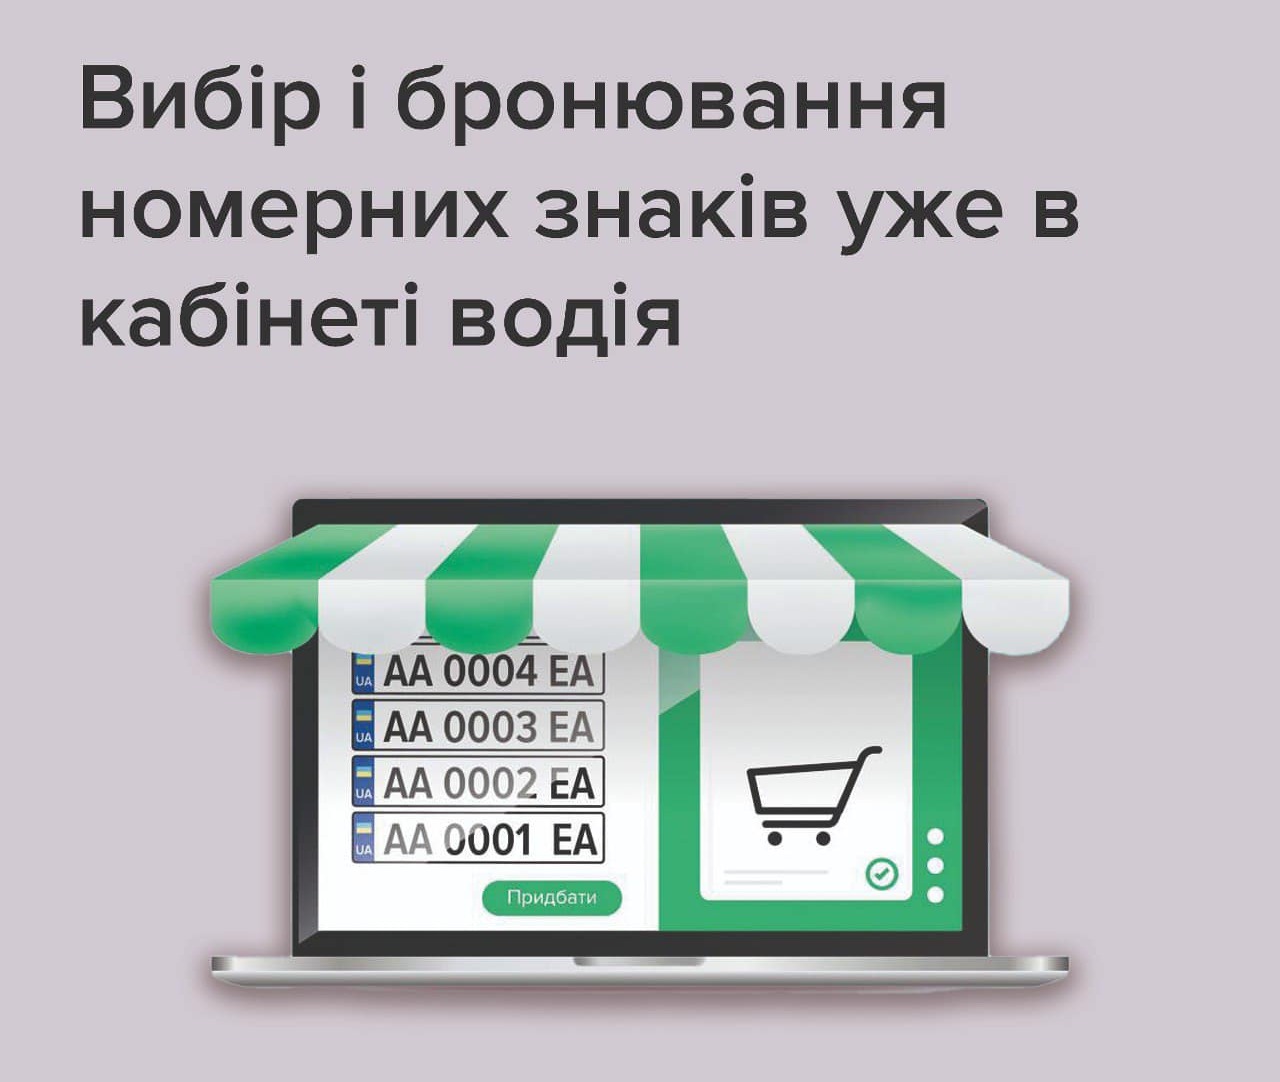 У украинцев появилась возможность выбирать и бронировать номерные знаки для авто онлайн 